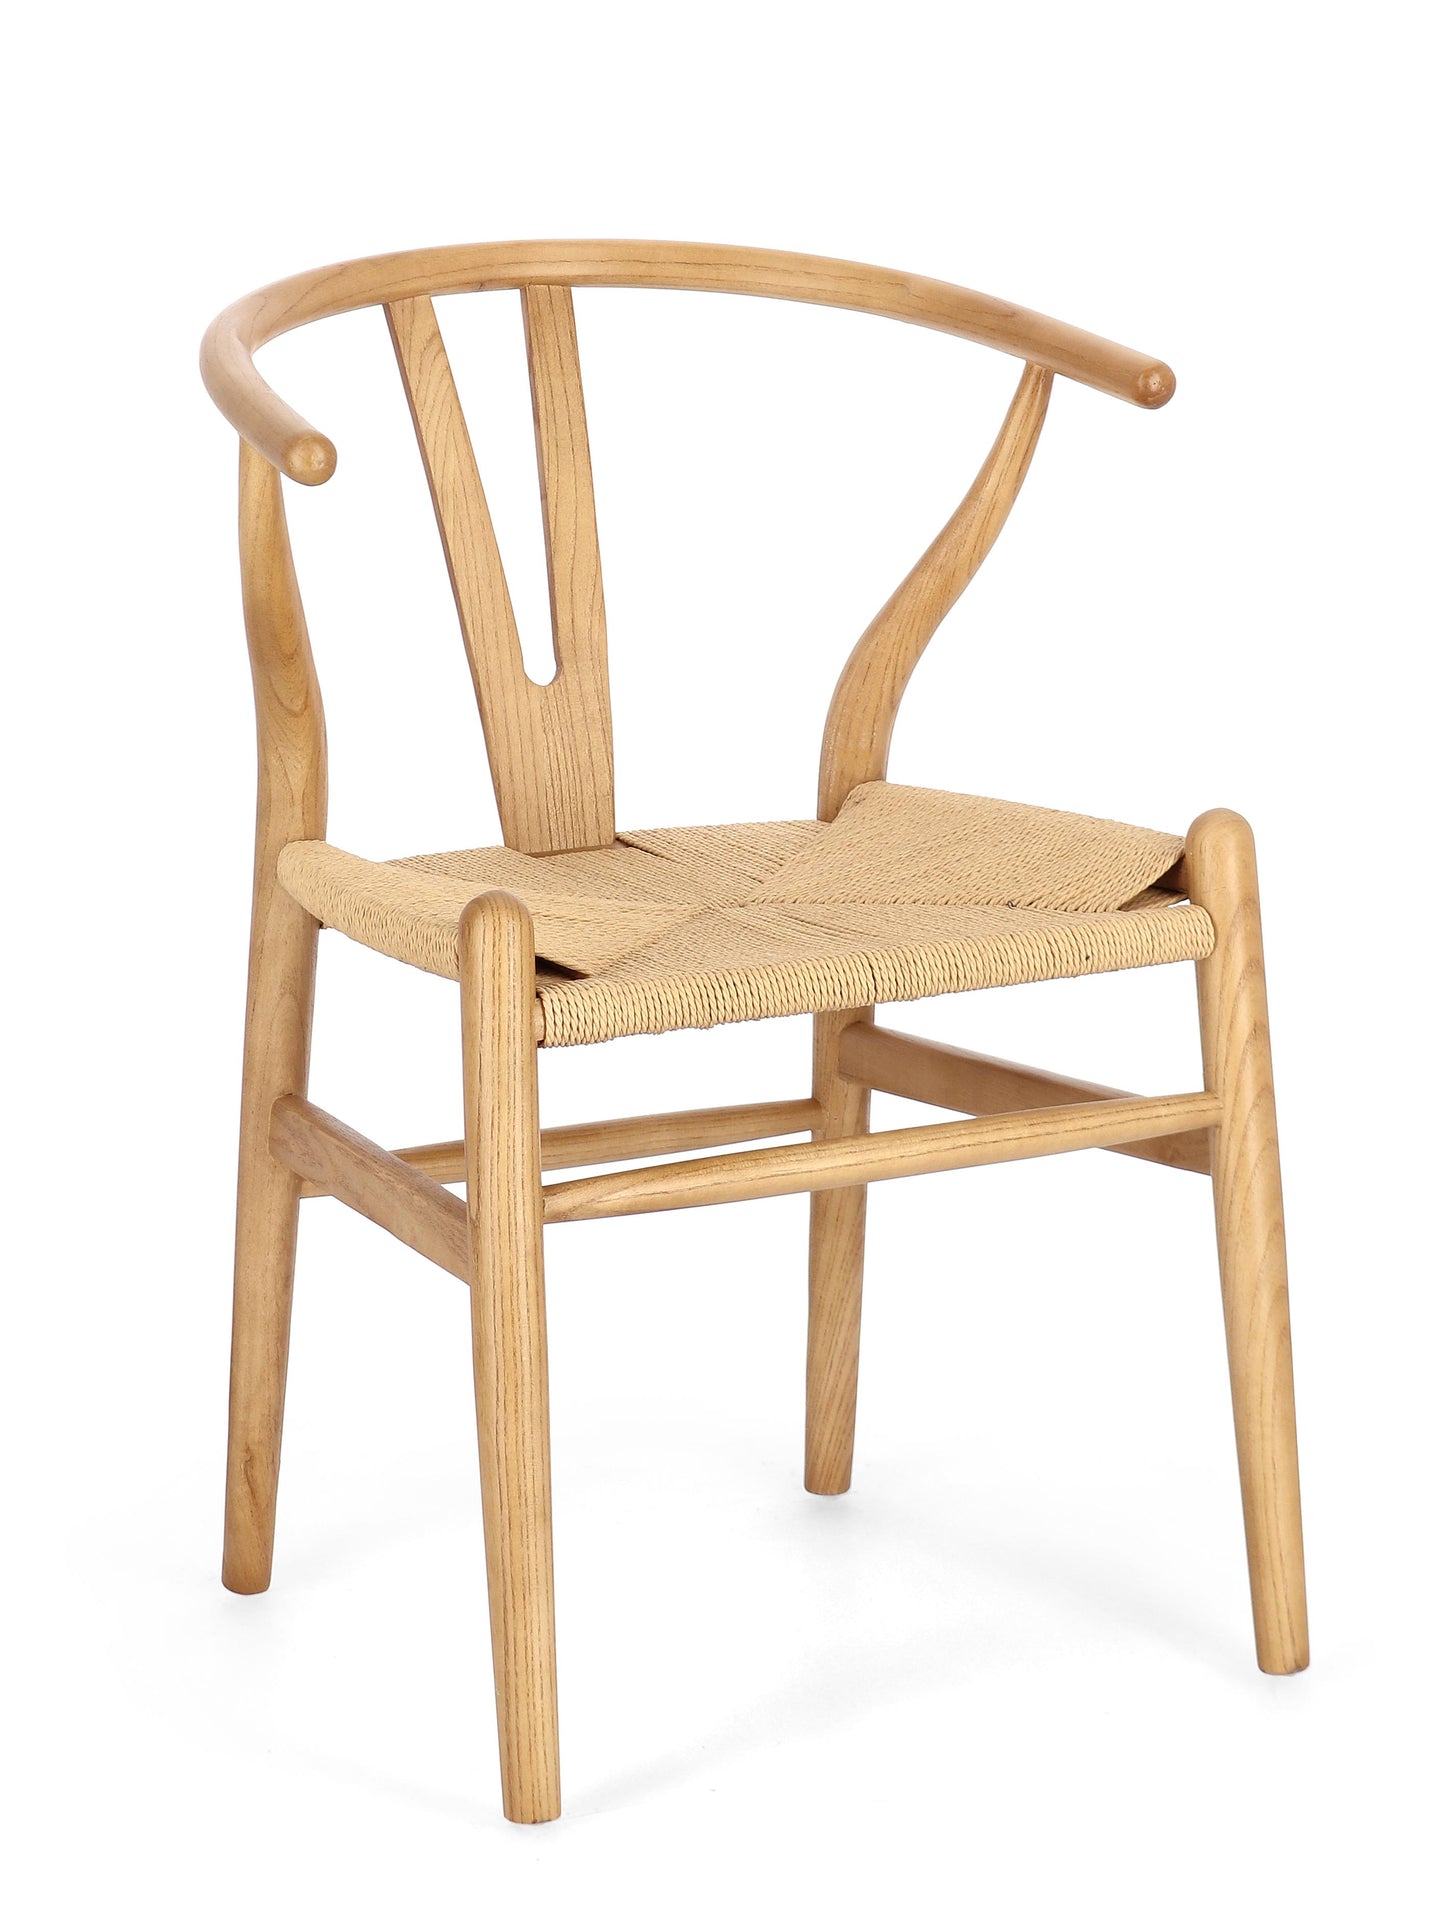 Sedia impagliata in legno massiccio stile design rustico